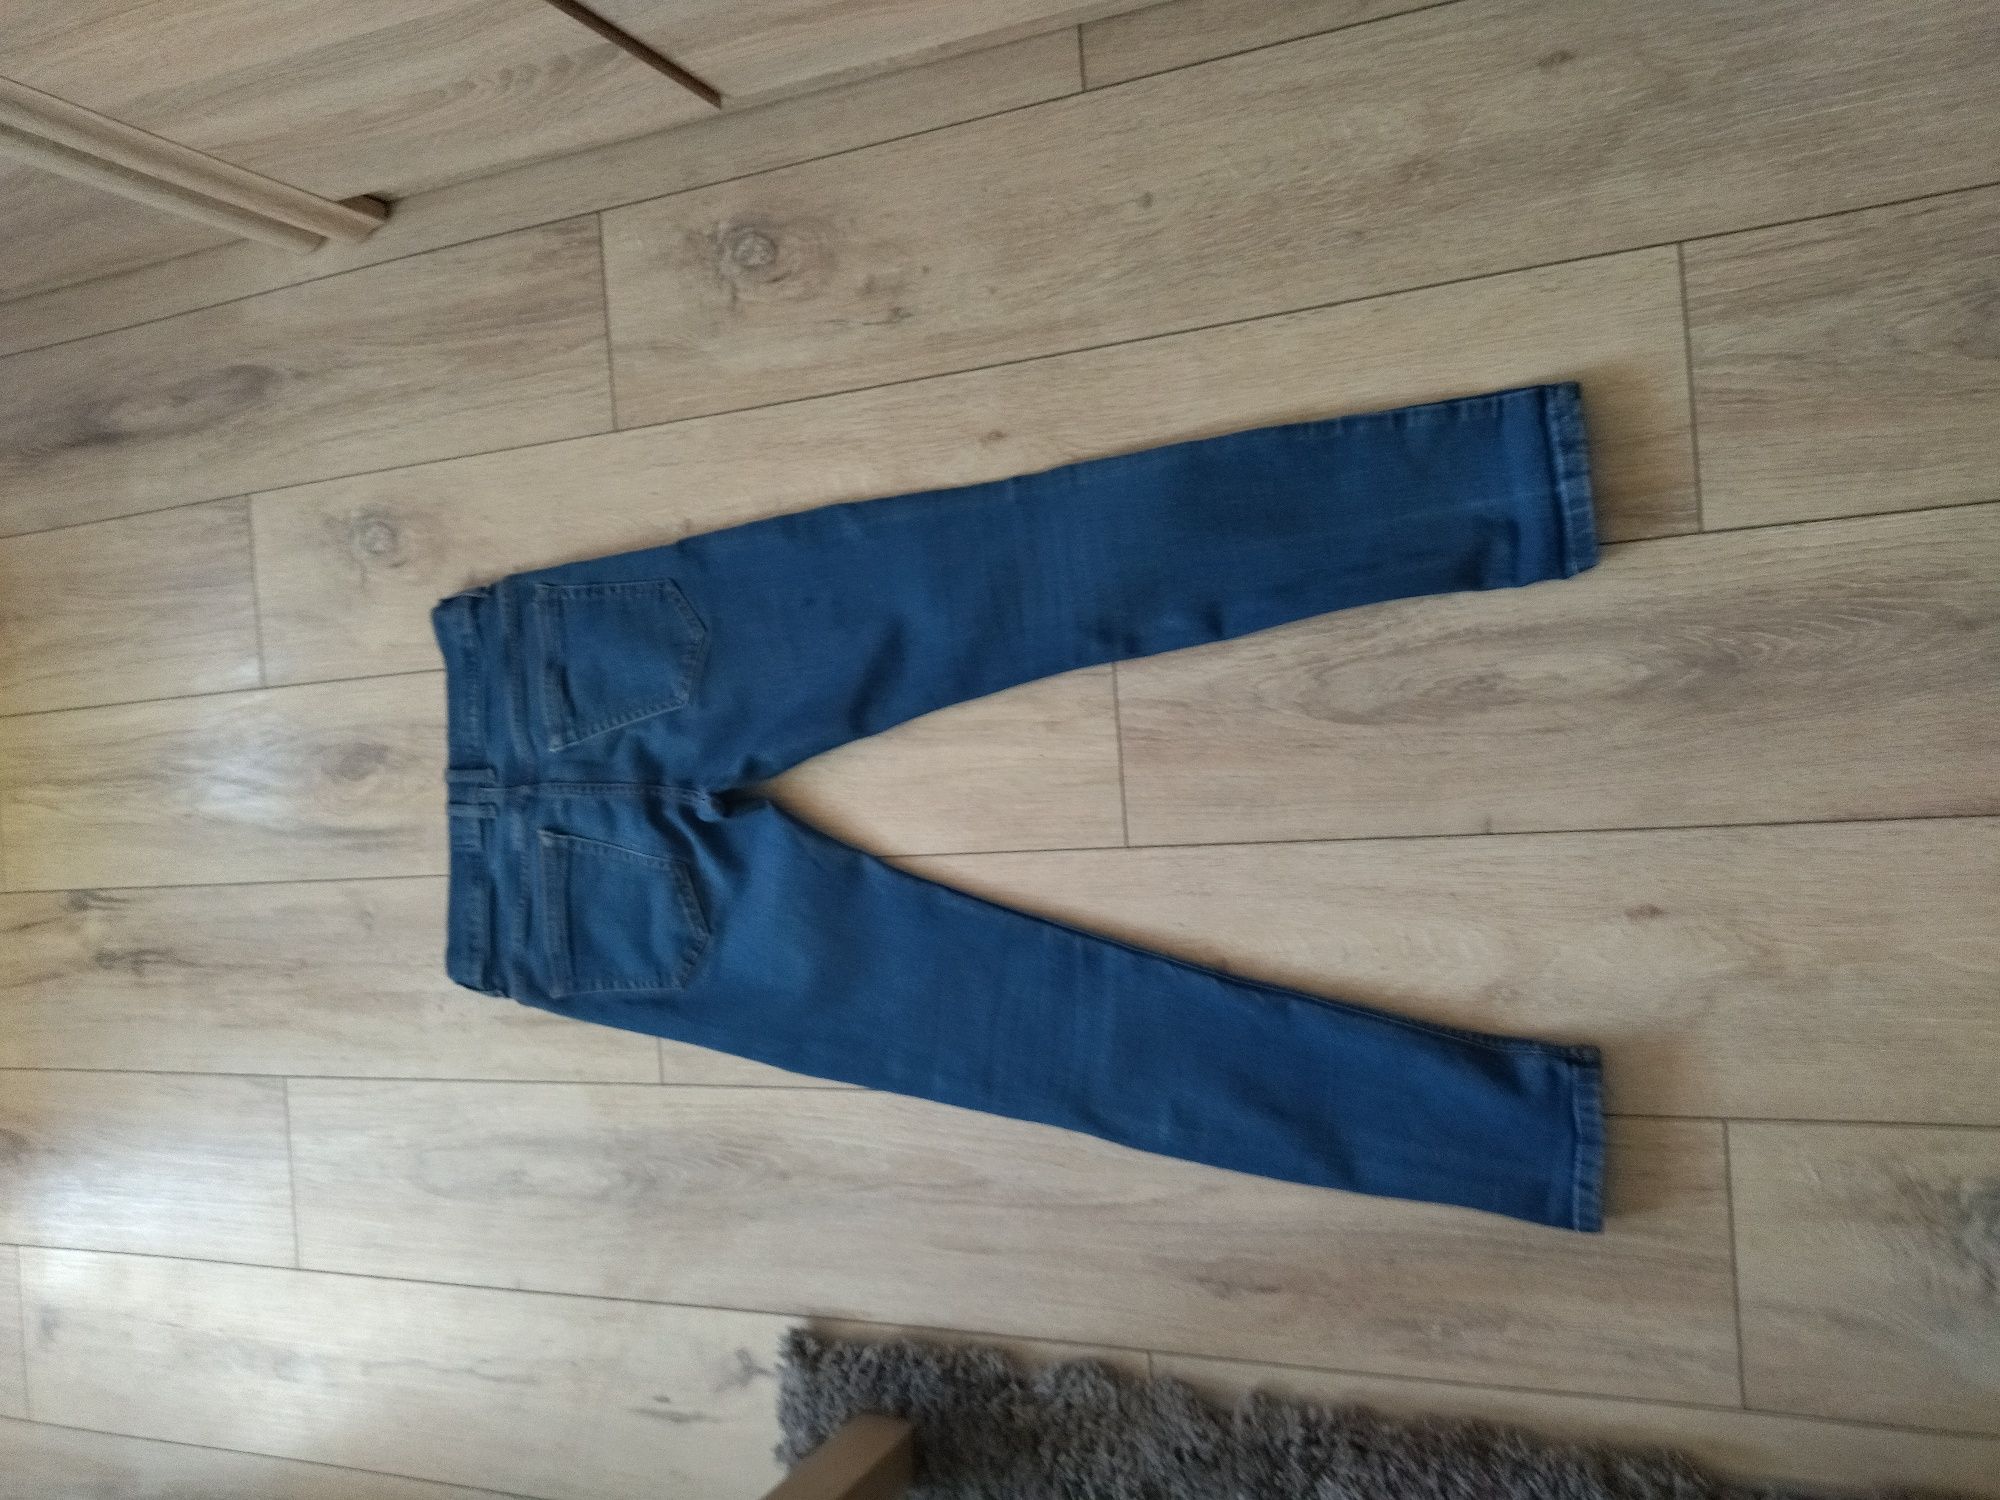 Spodnie jeans damskie roz 38- jak NOWE- firmowe